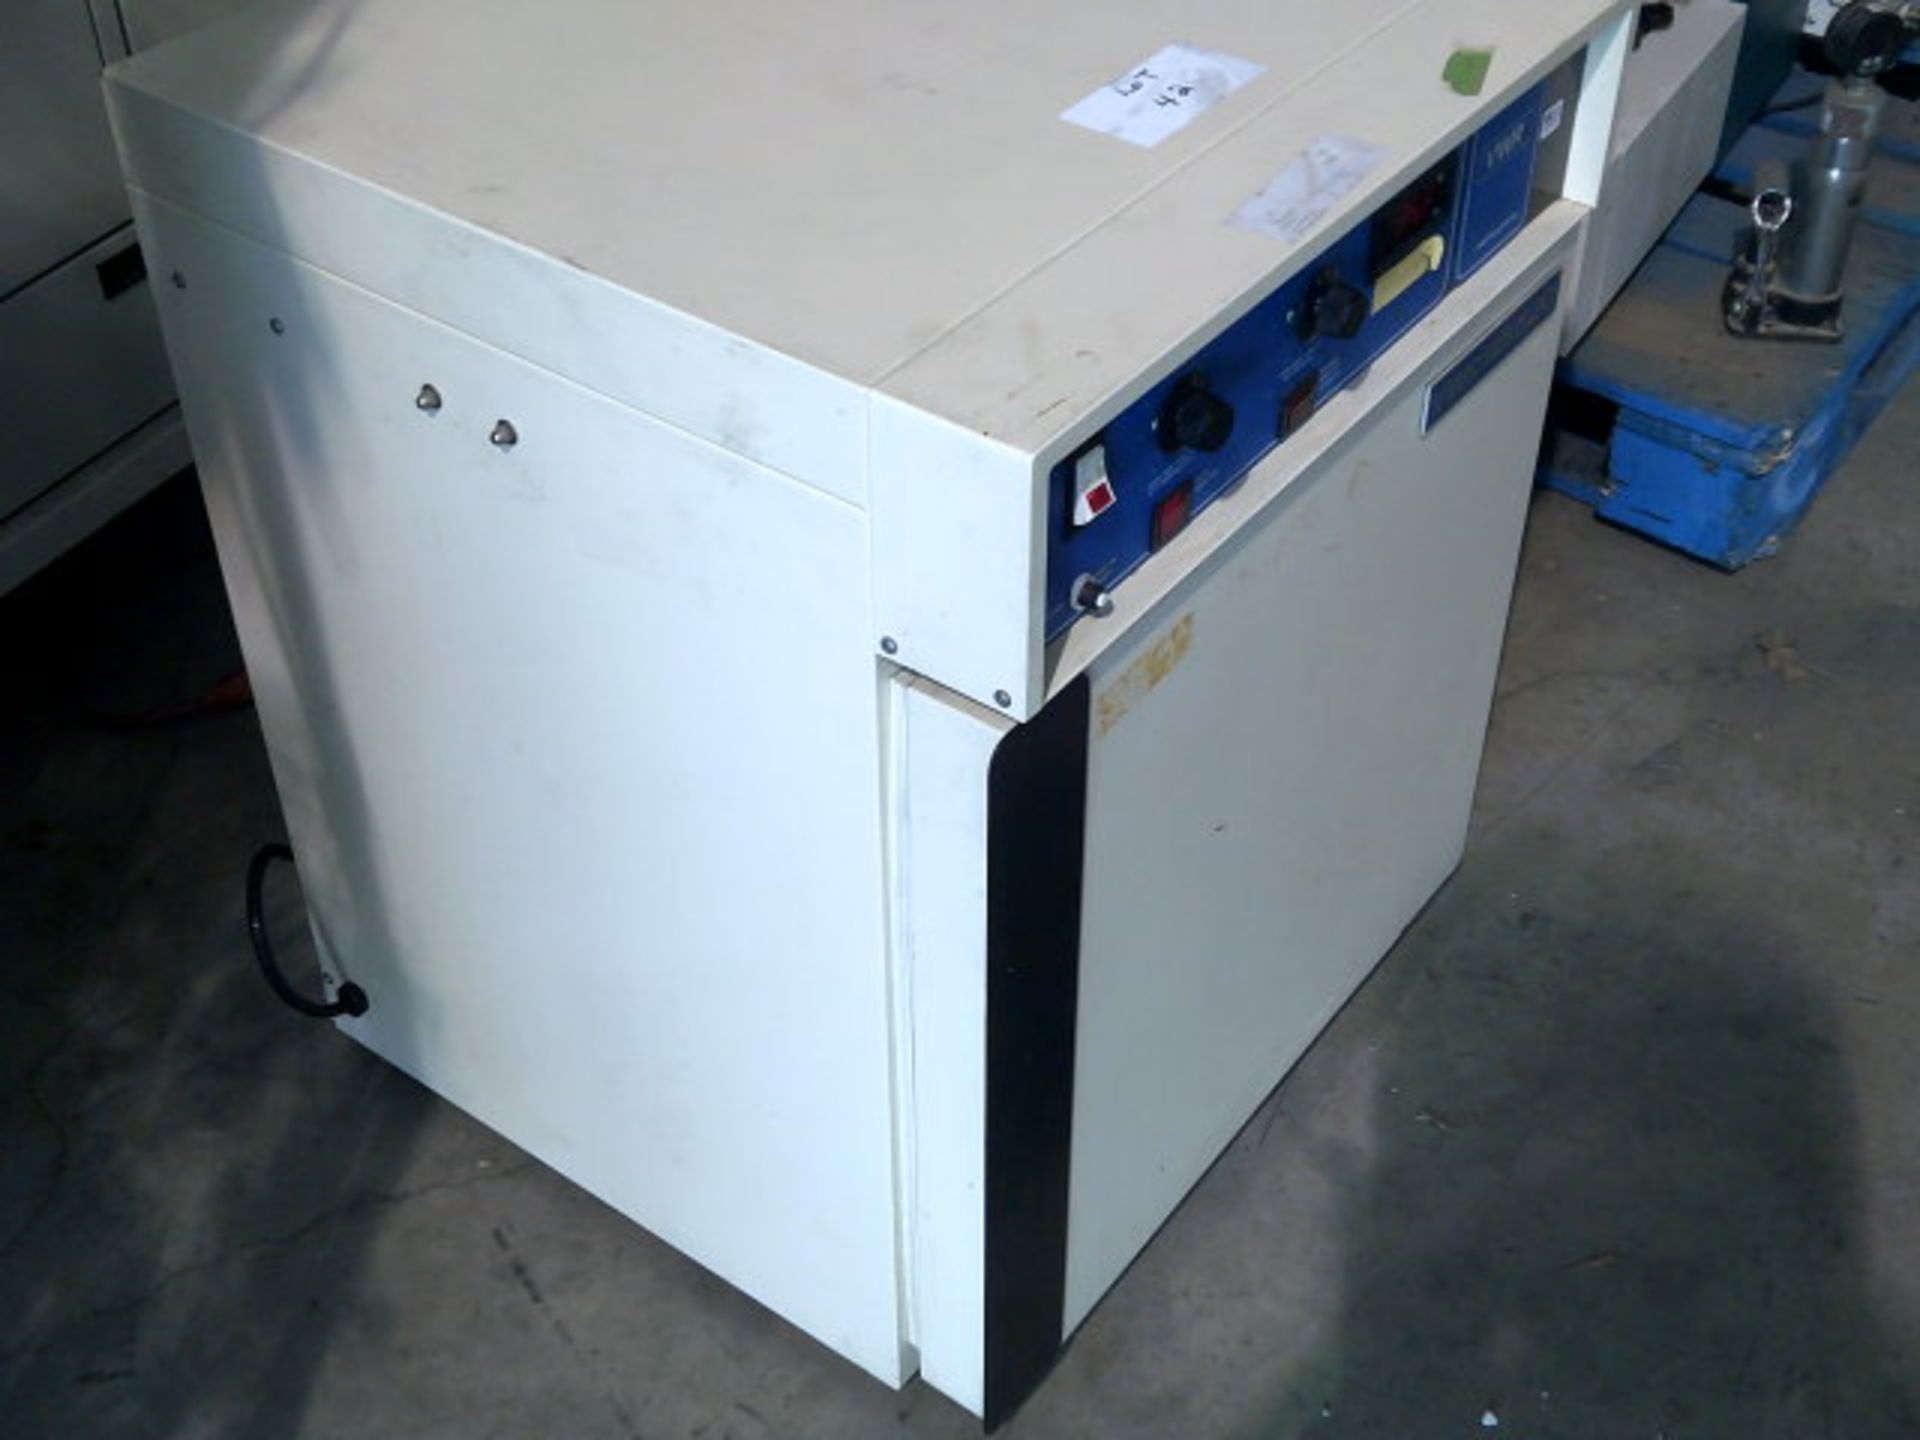 VWR Sheldon 1520 Incubator 1.95 CU ft Capacity, Qty 1, 332741440622 - Image 2 of 7